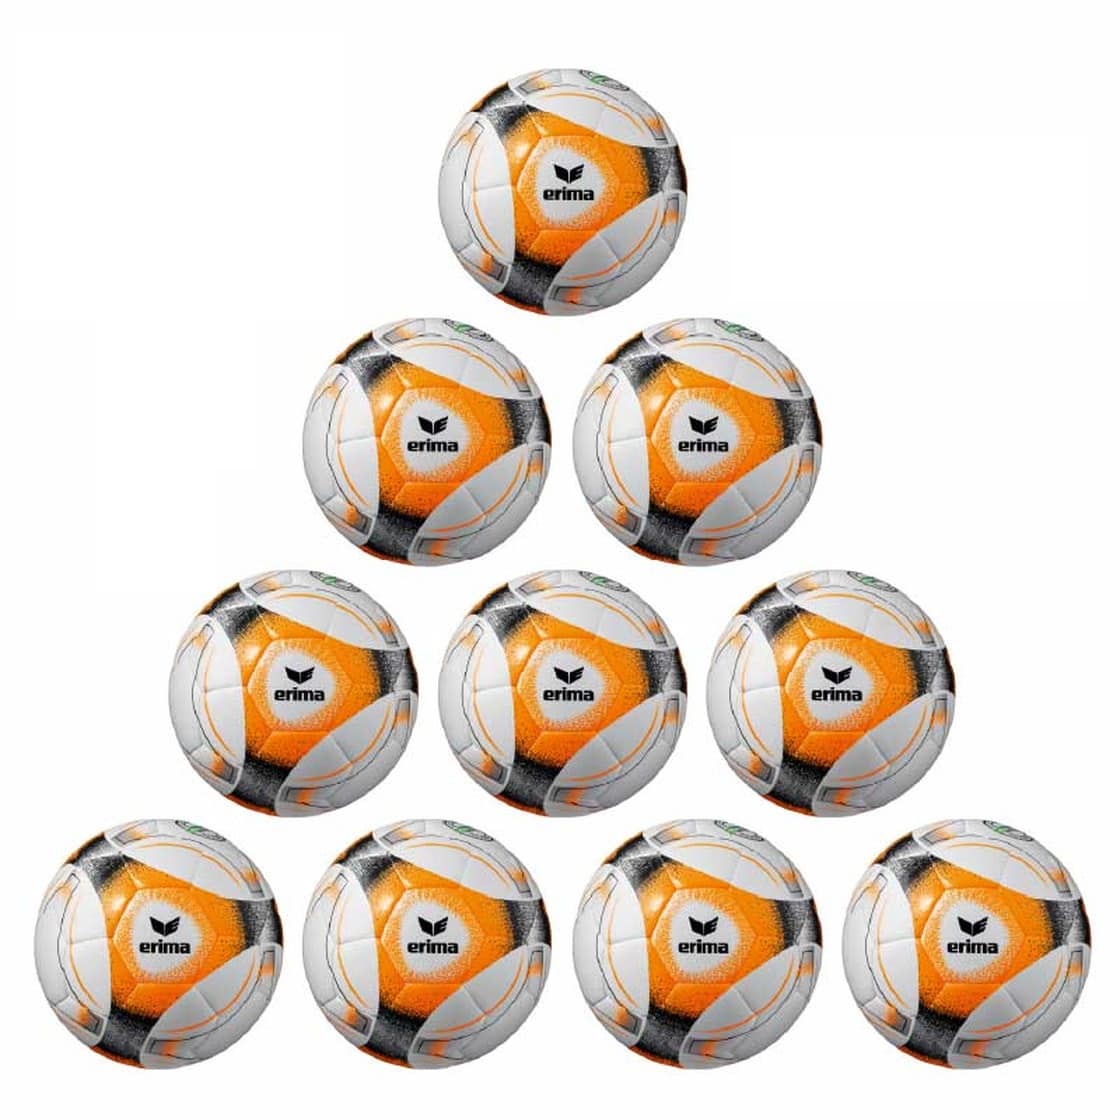 Erima Ballpaket 10x Hybrid Trainingsball Lite 290g orange inkl. Ballsack